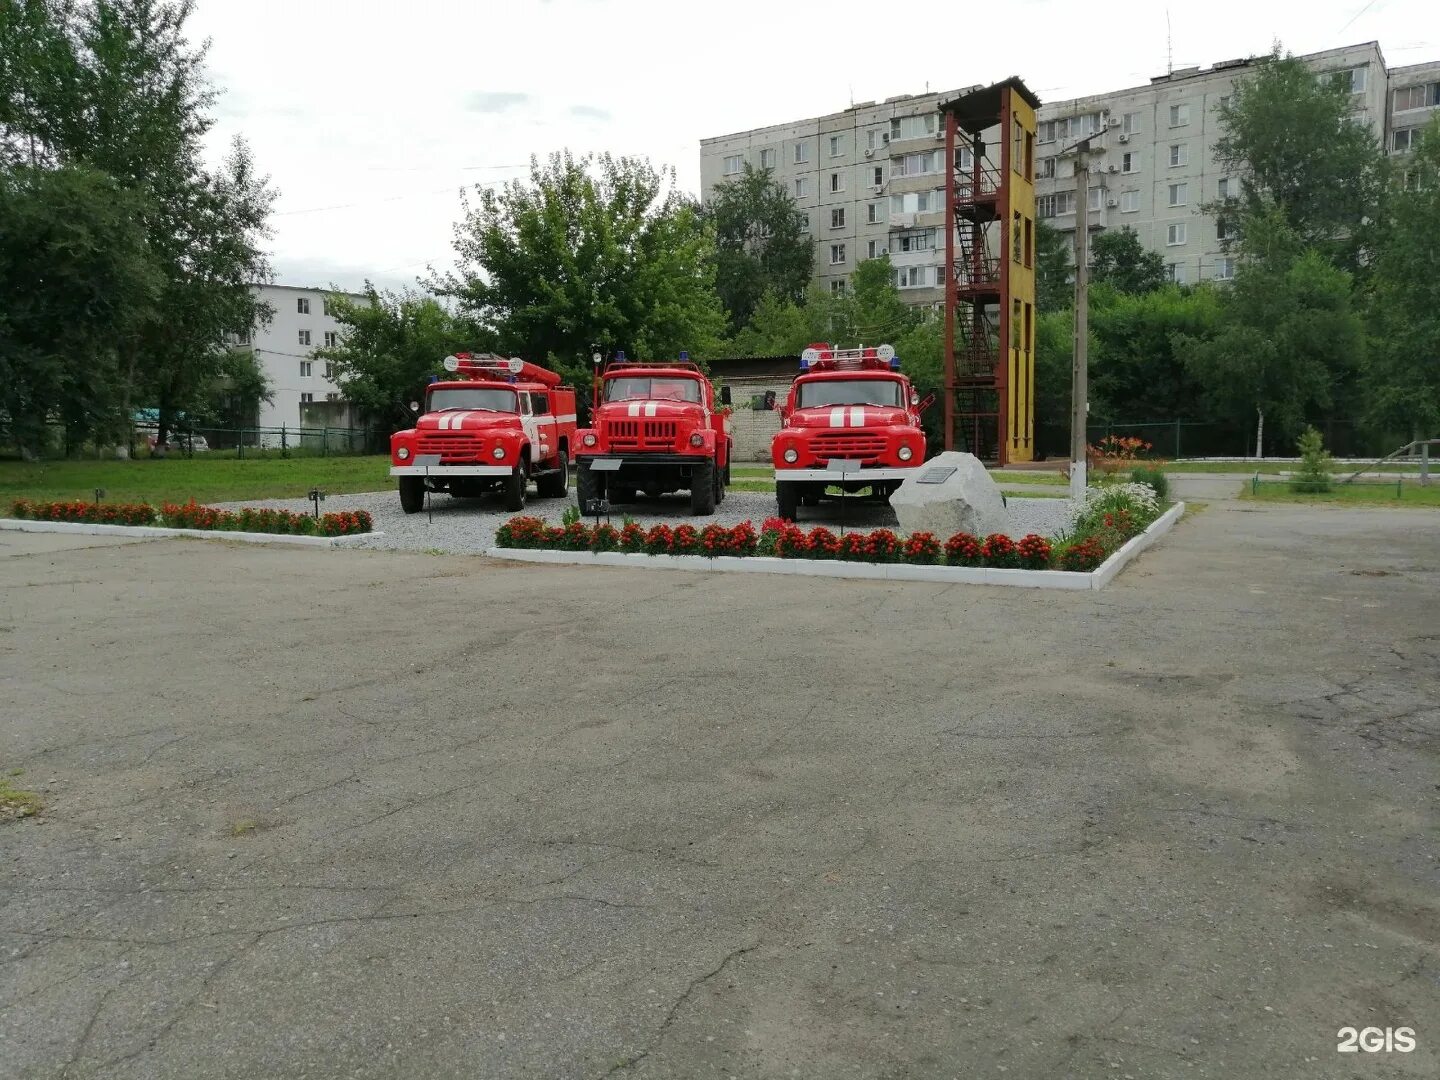 Сп 3 пожарная. 2 Пожарная часть Хабаровск. Пожарная часть 30 Хабаровск. Хабаровск пожарный часть. Пожарный часть 35 Хабаровск.